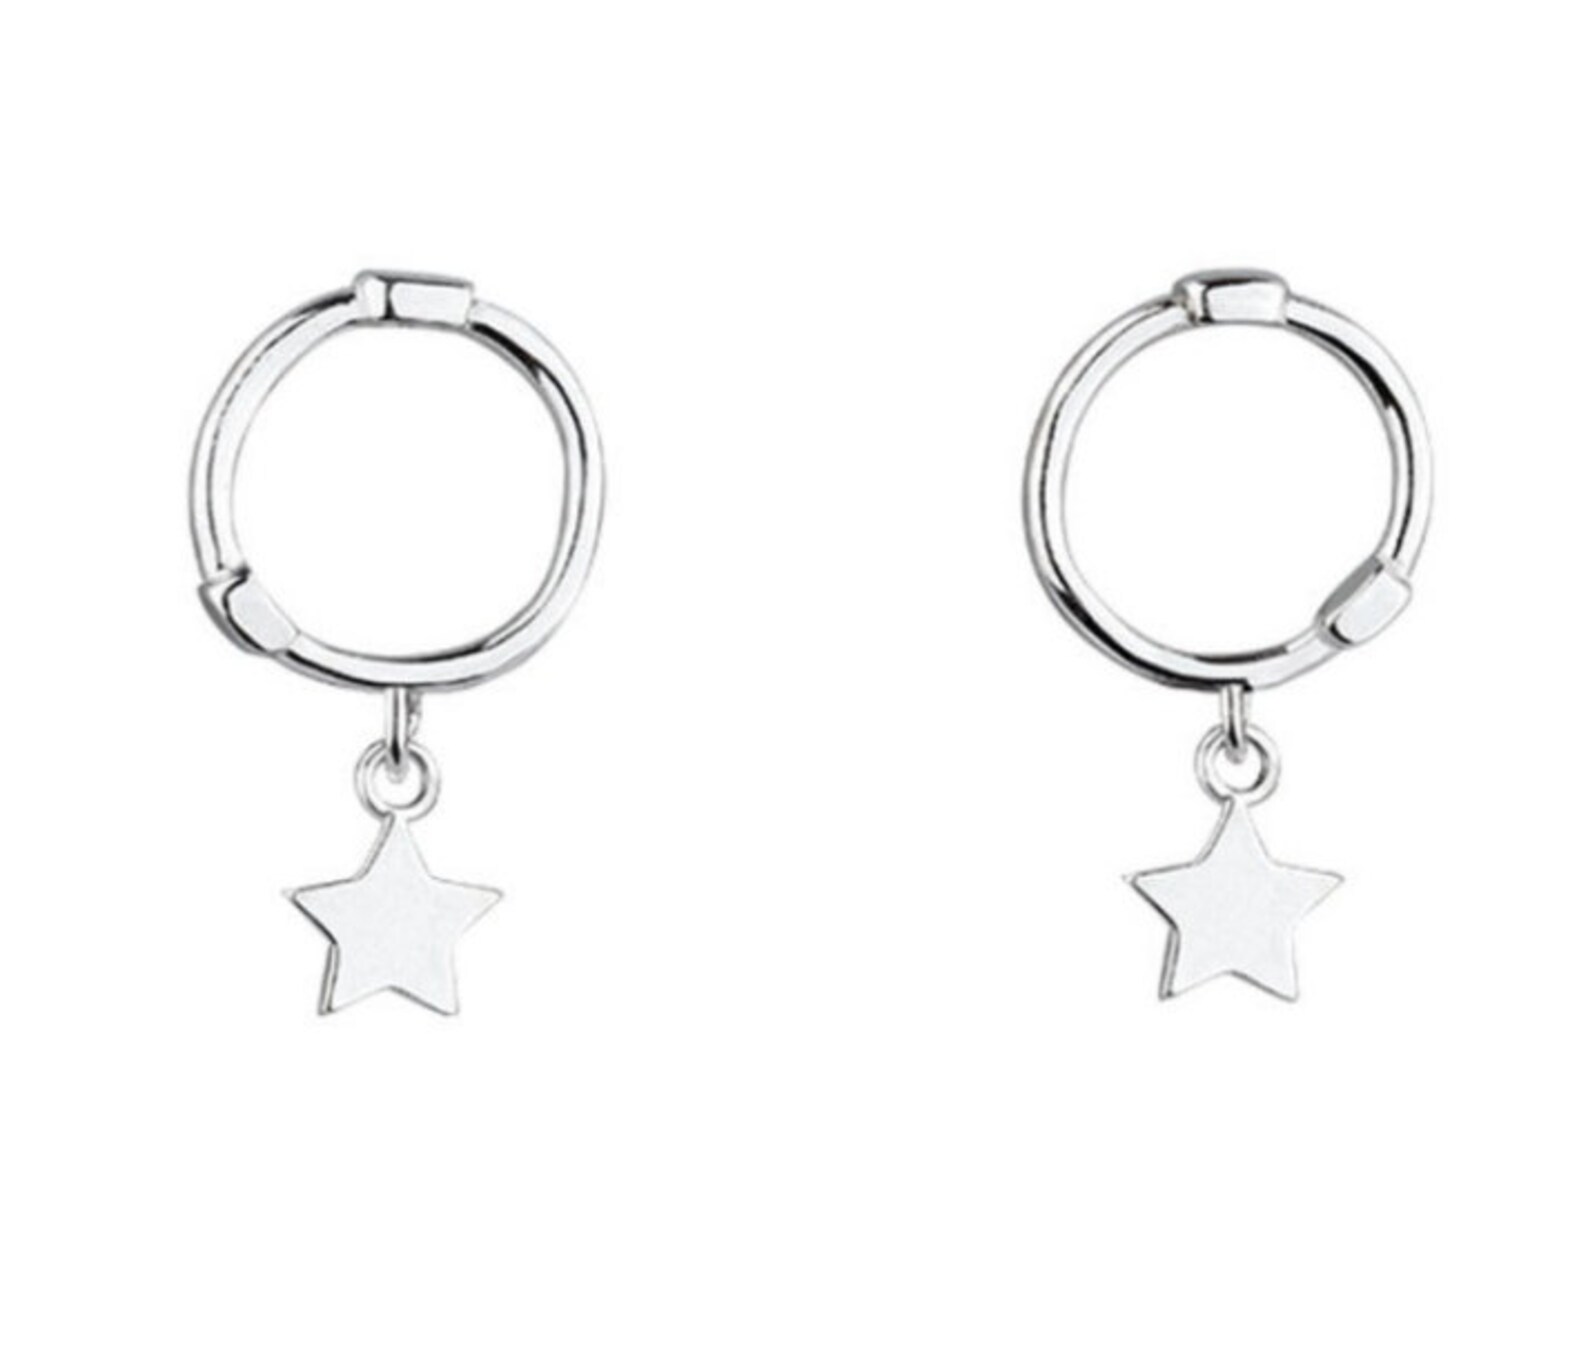 Sterling silver star hoop earring hoops | Etsy